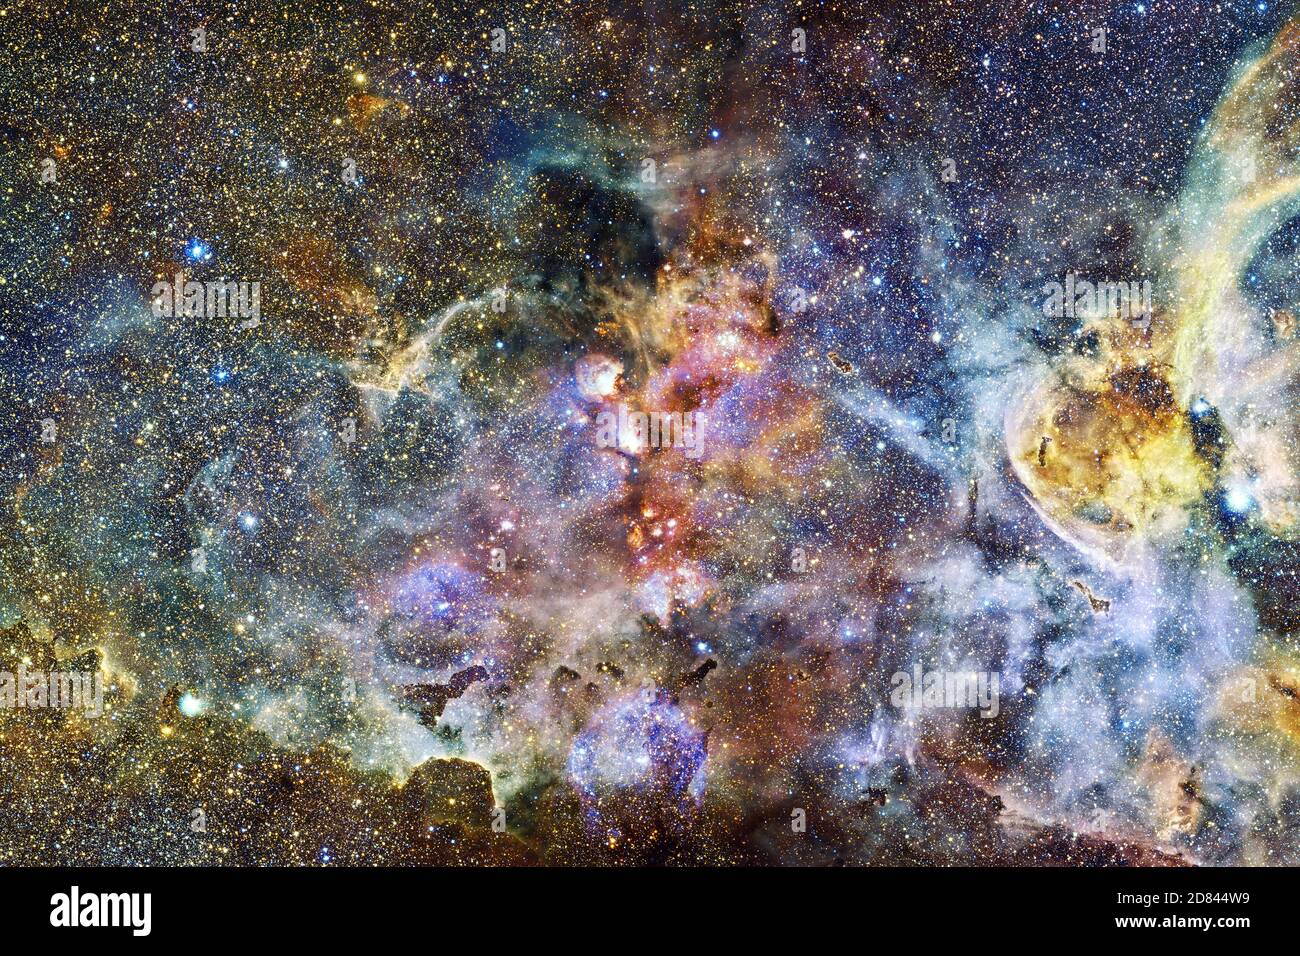 Bella galassia da qualche parte in uno spazio profondo. Carta da parati cosmica. Elementi di questa immagine forniti dalla NASA Foto Stock